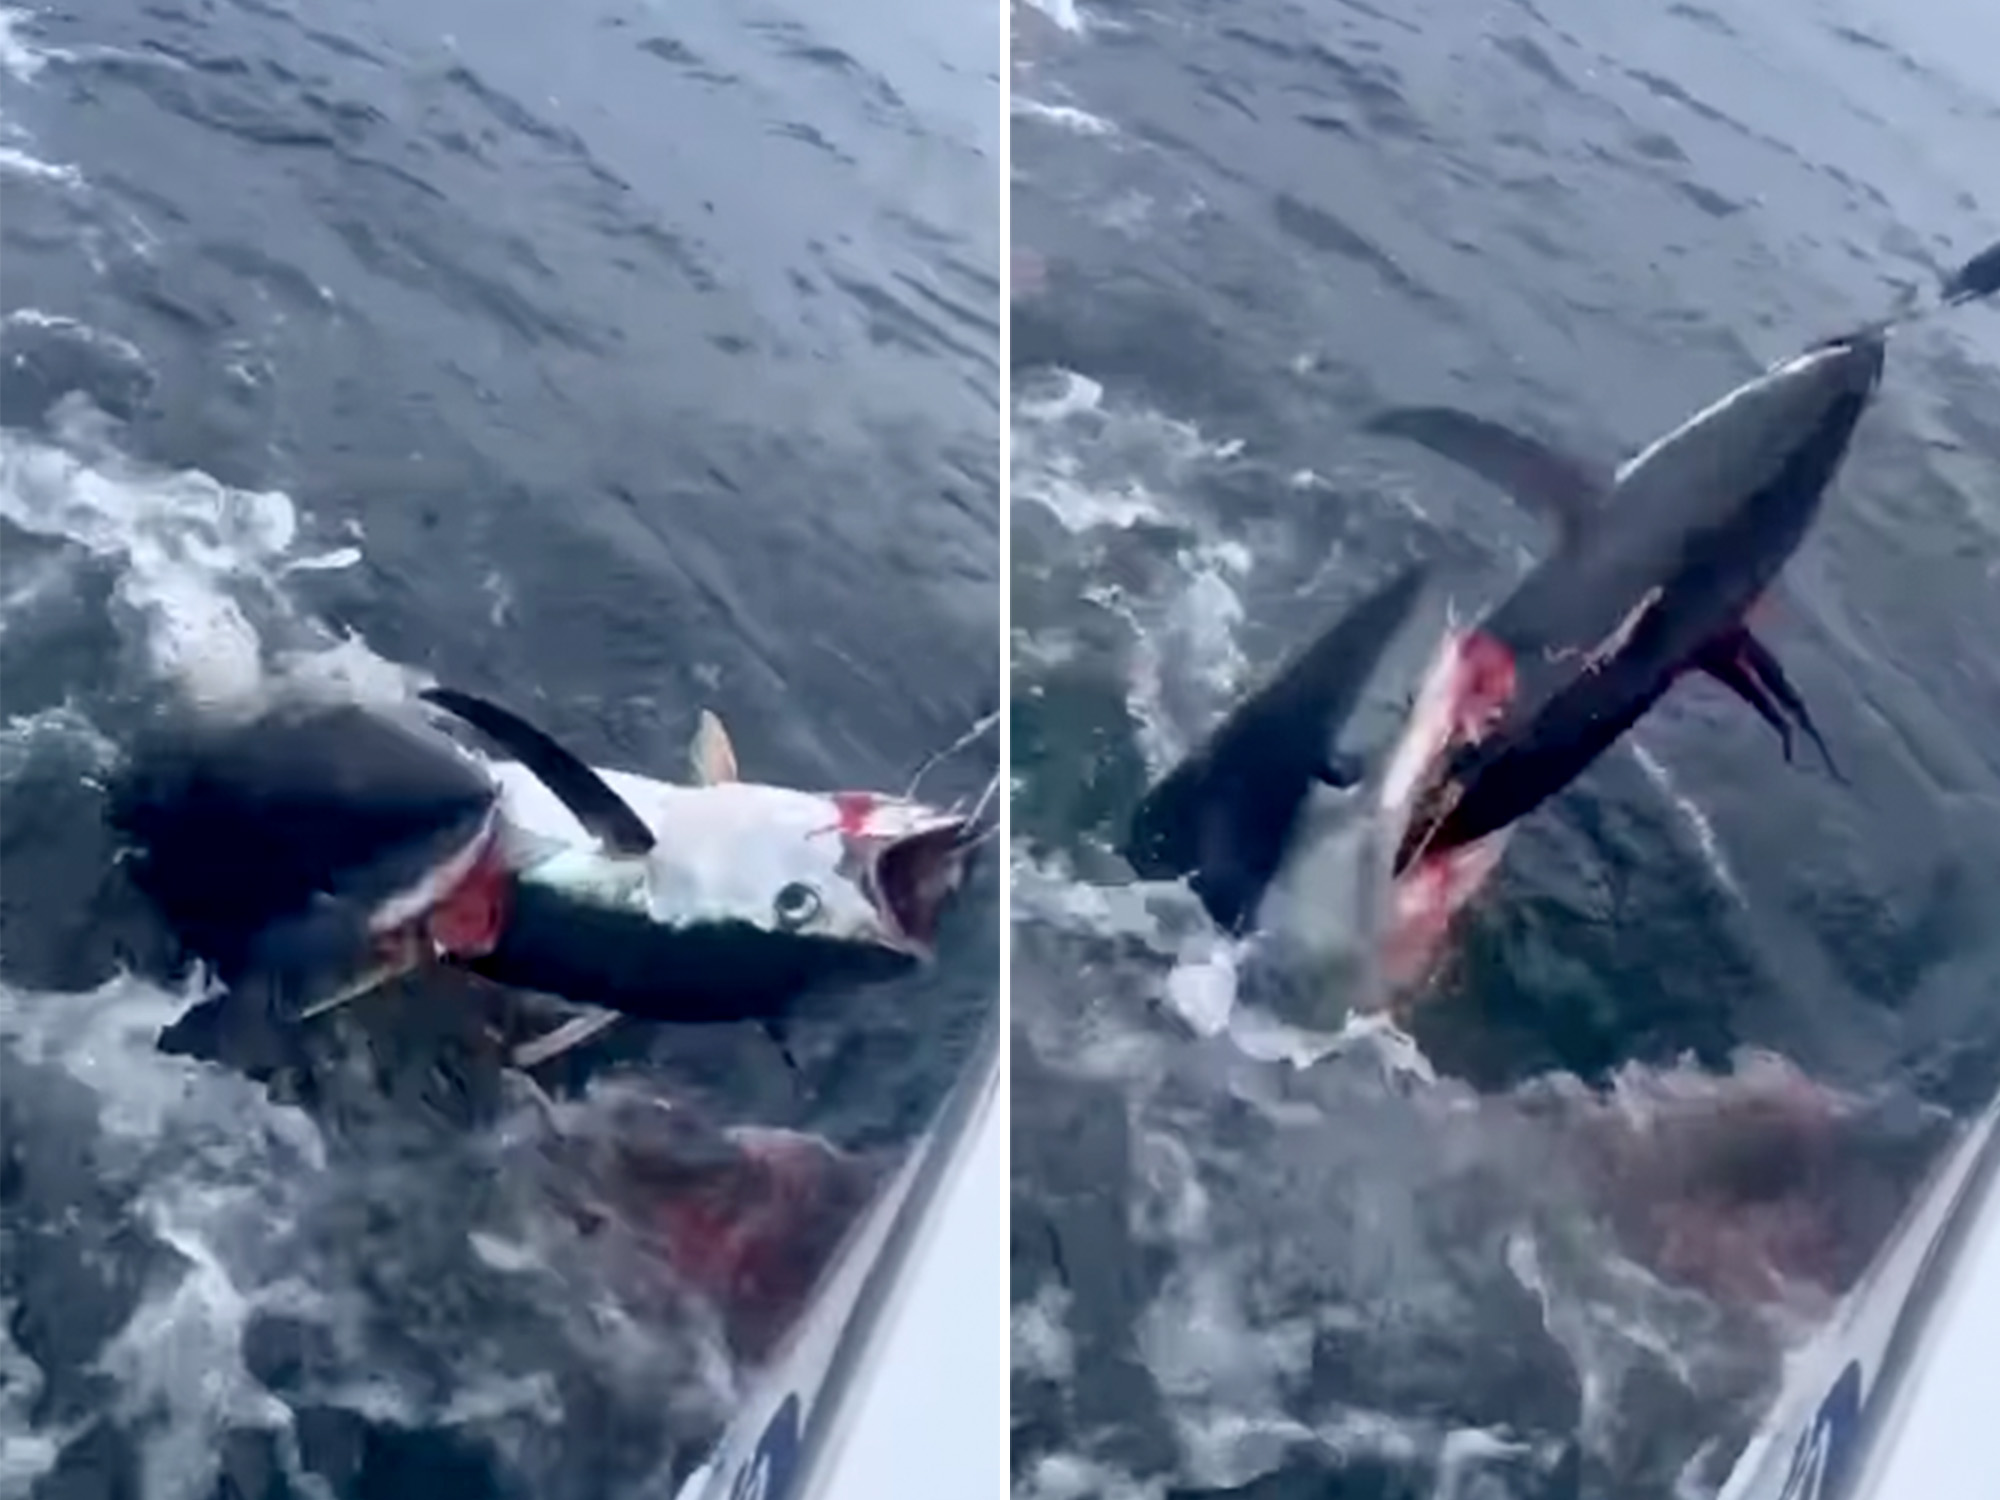 shark attack bites man in half